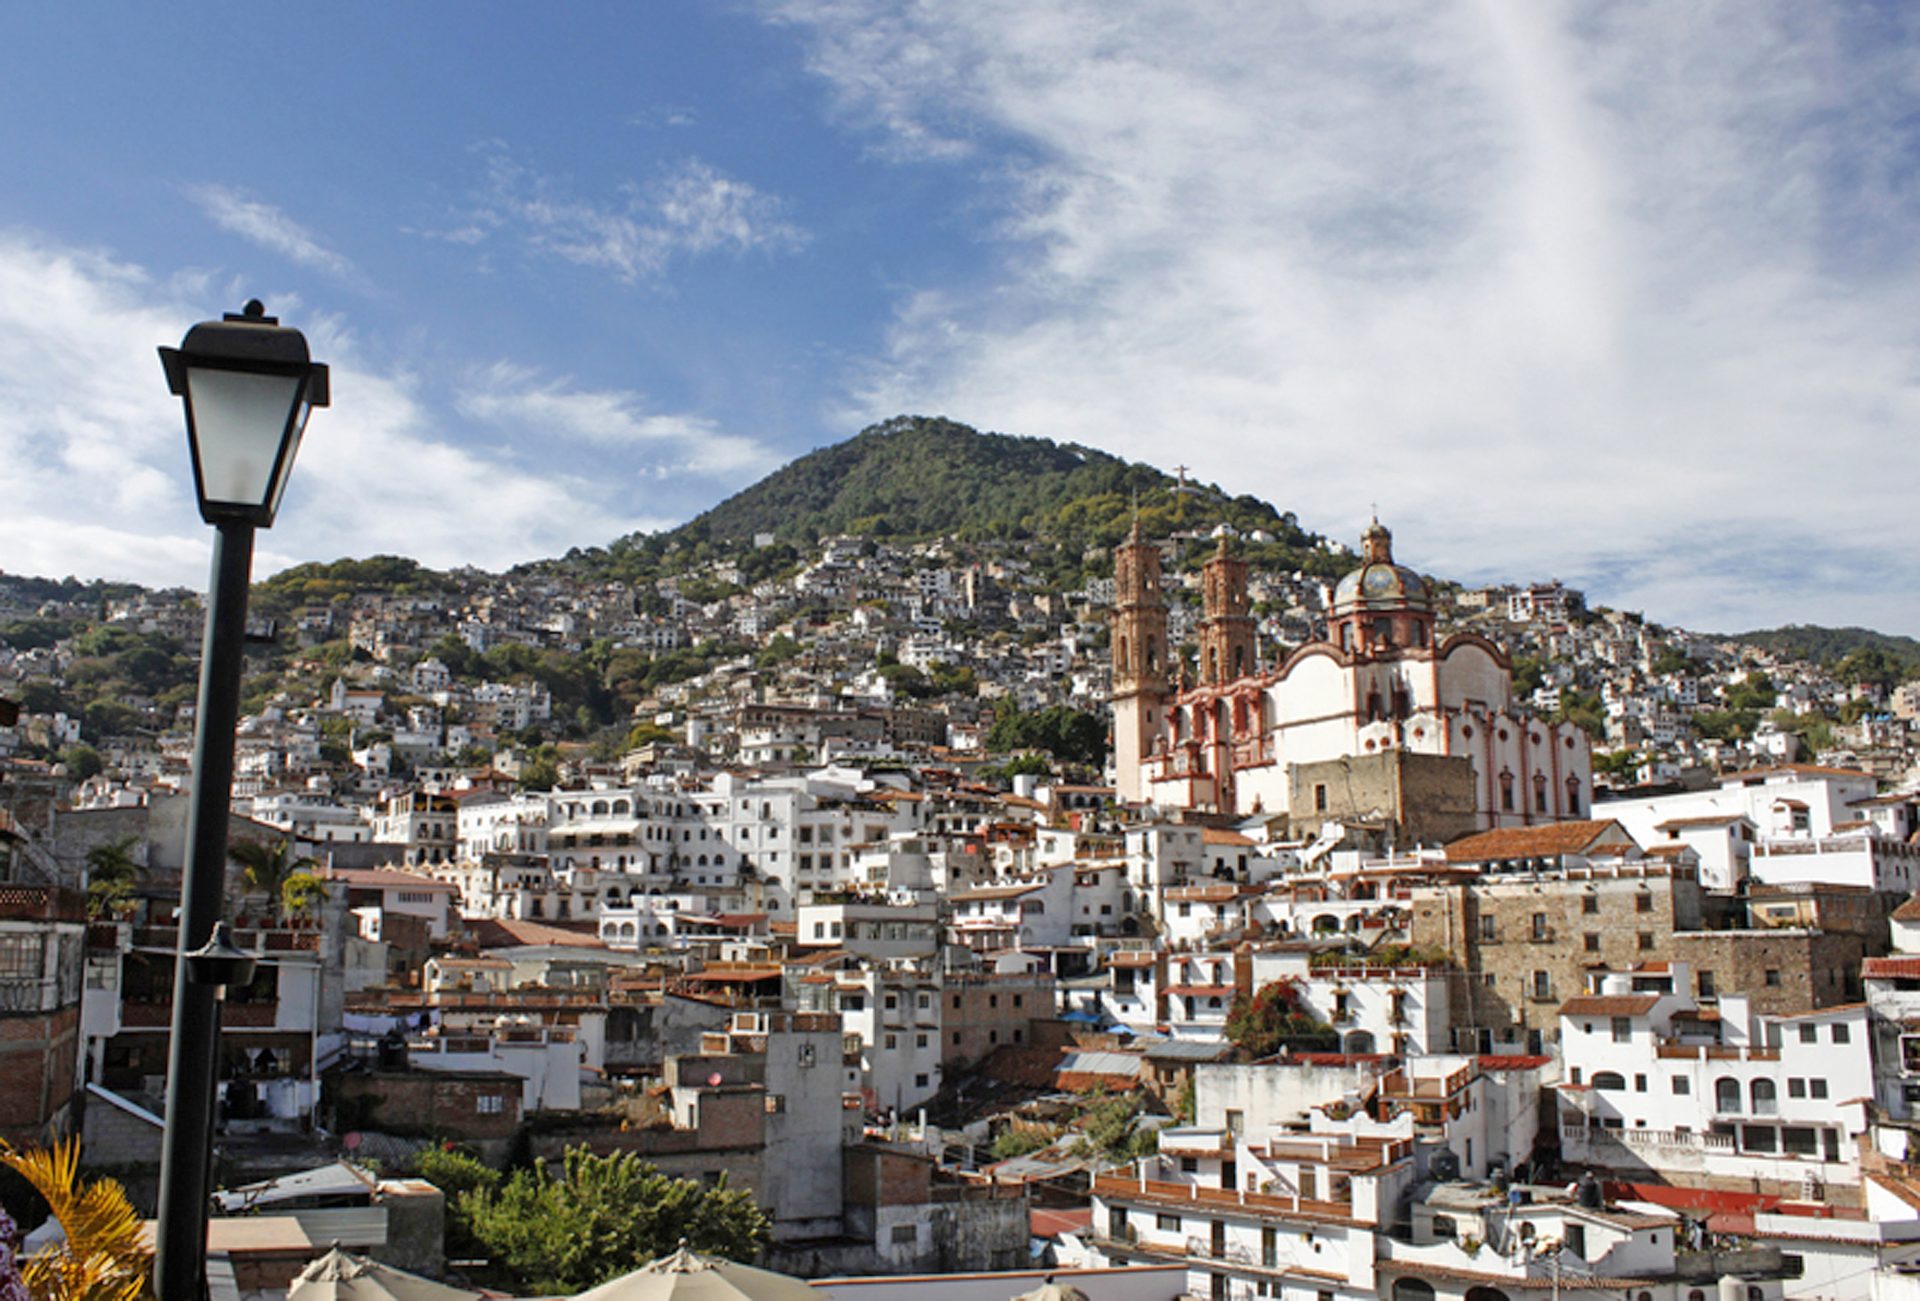 Vista de la ciudad de Taxco de Alarcón. Foto: Diego Caballo